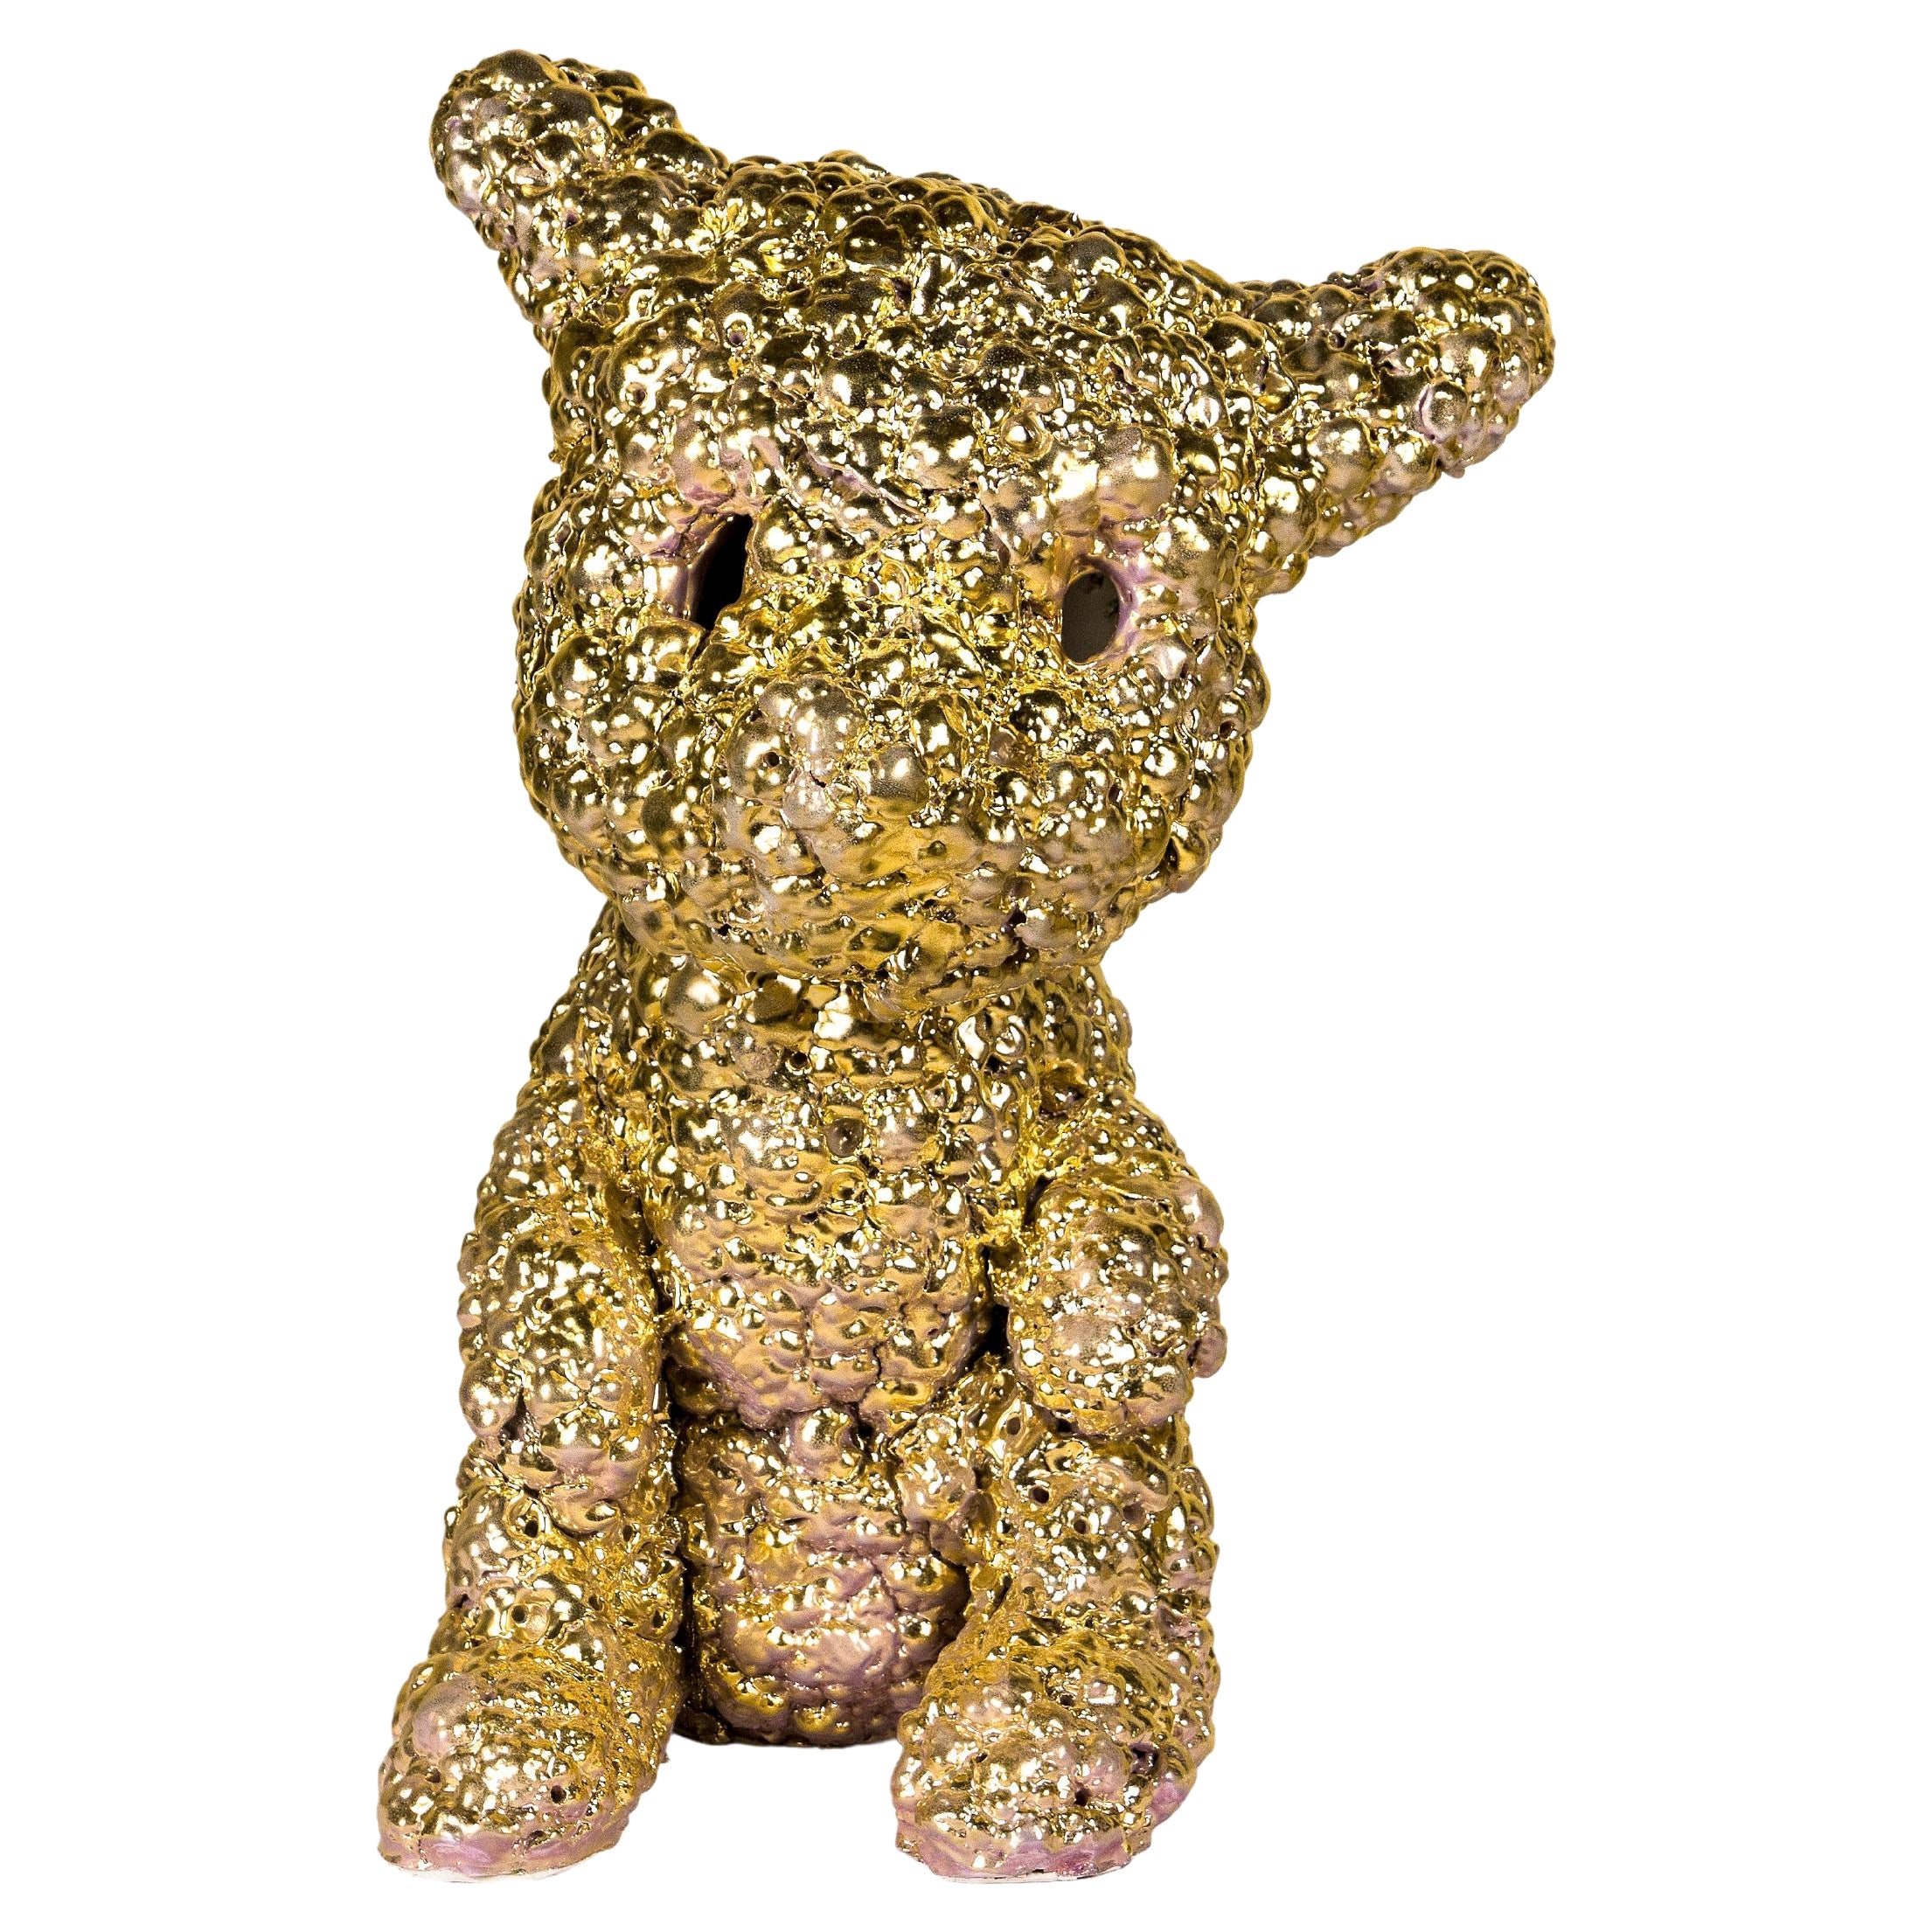 Kim Simonsson Sculpture "Golden Dog", circa 2020, Finland